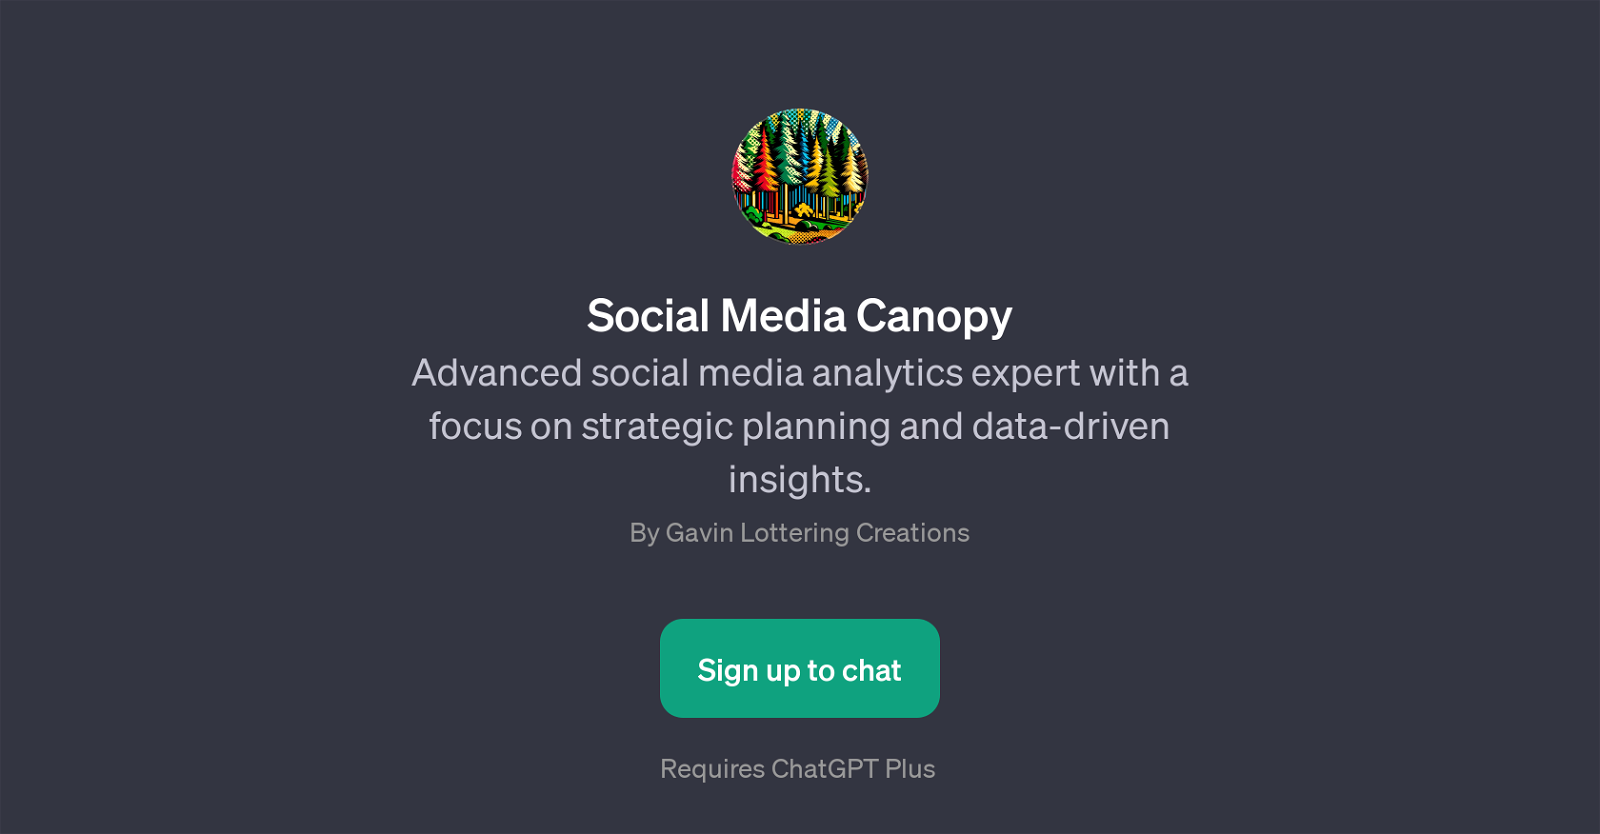 Social Media Canopy website